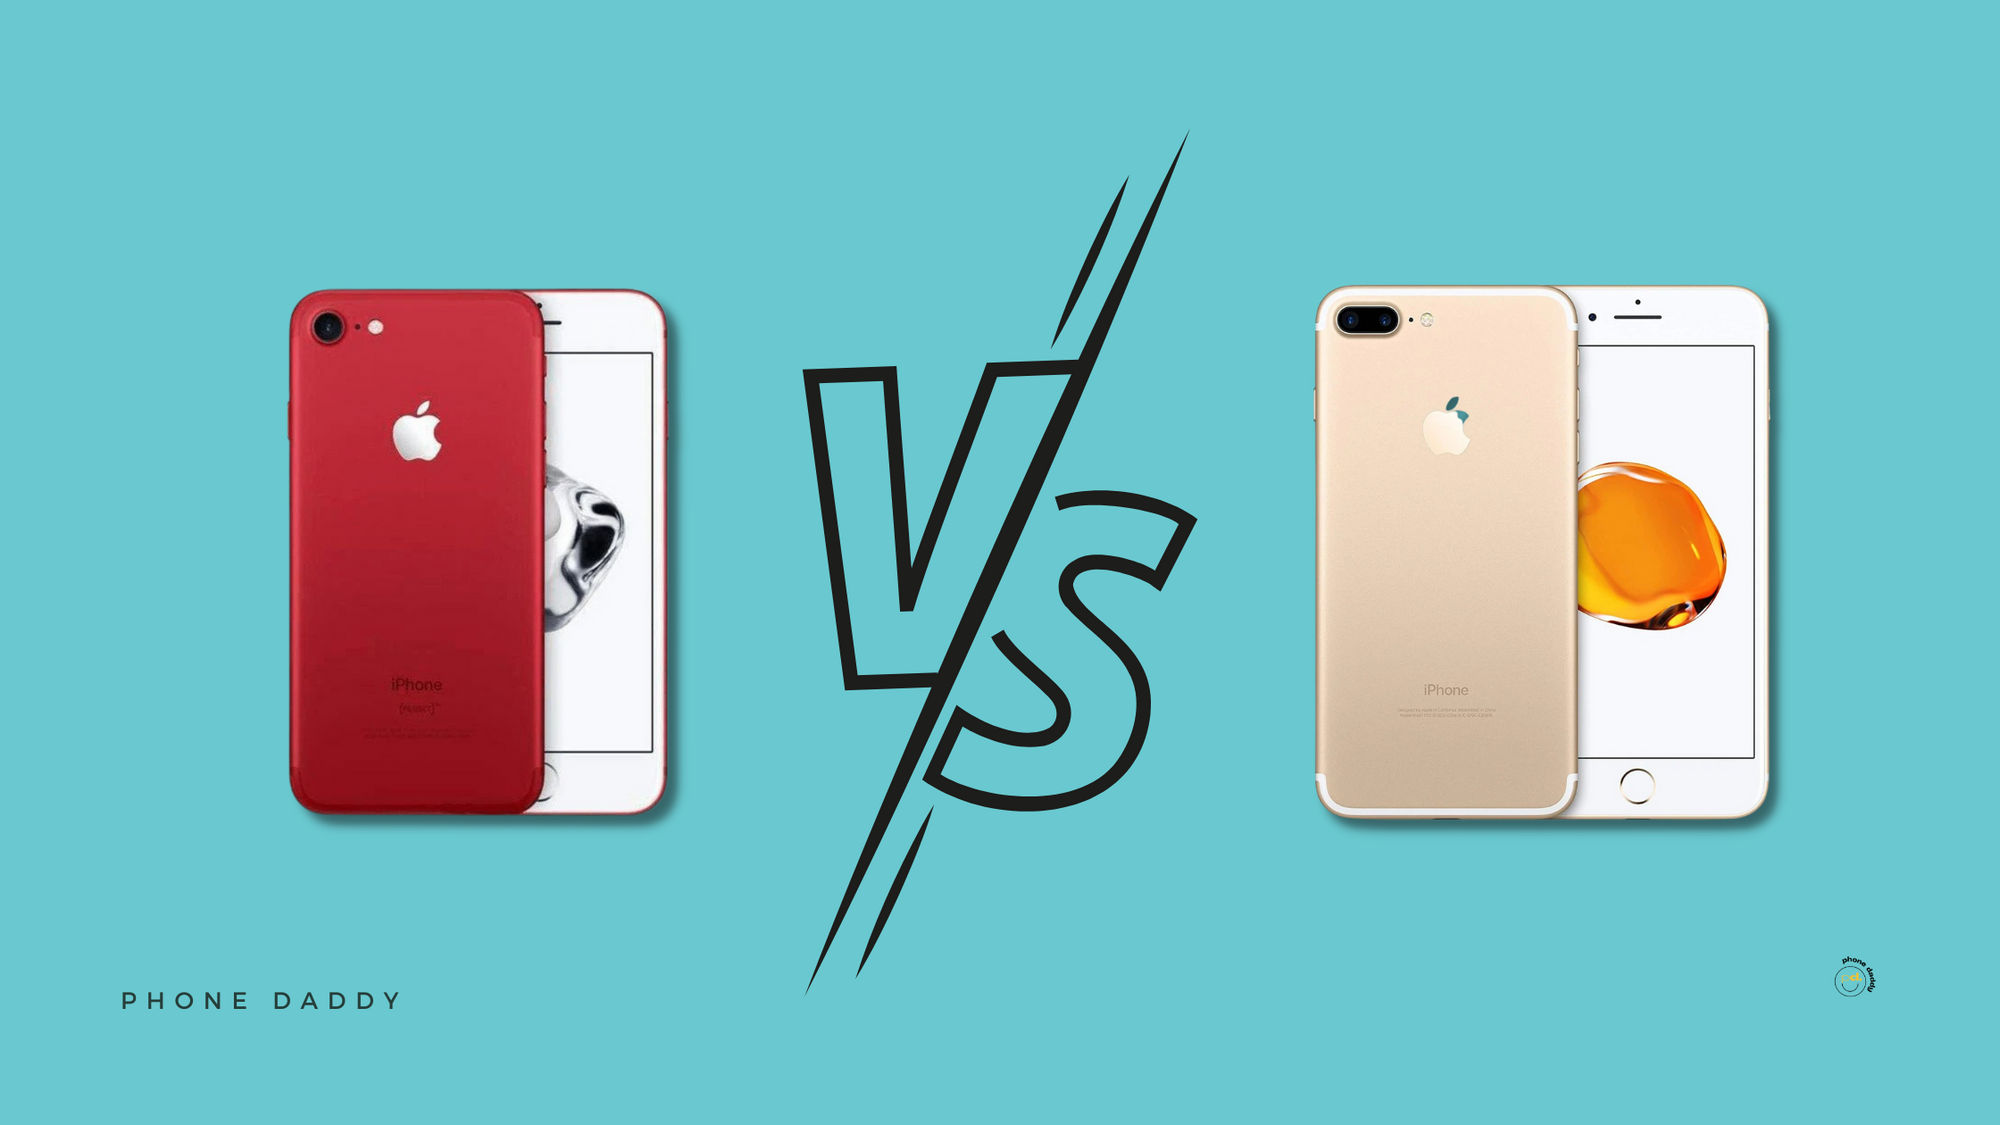 apple-iphone-7-vs-iphone-7-plus-smartphone-specs-comparison